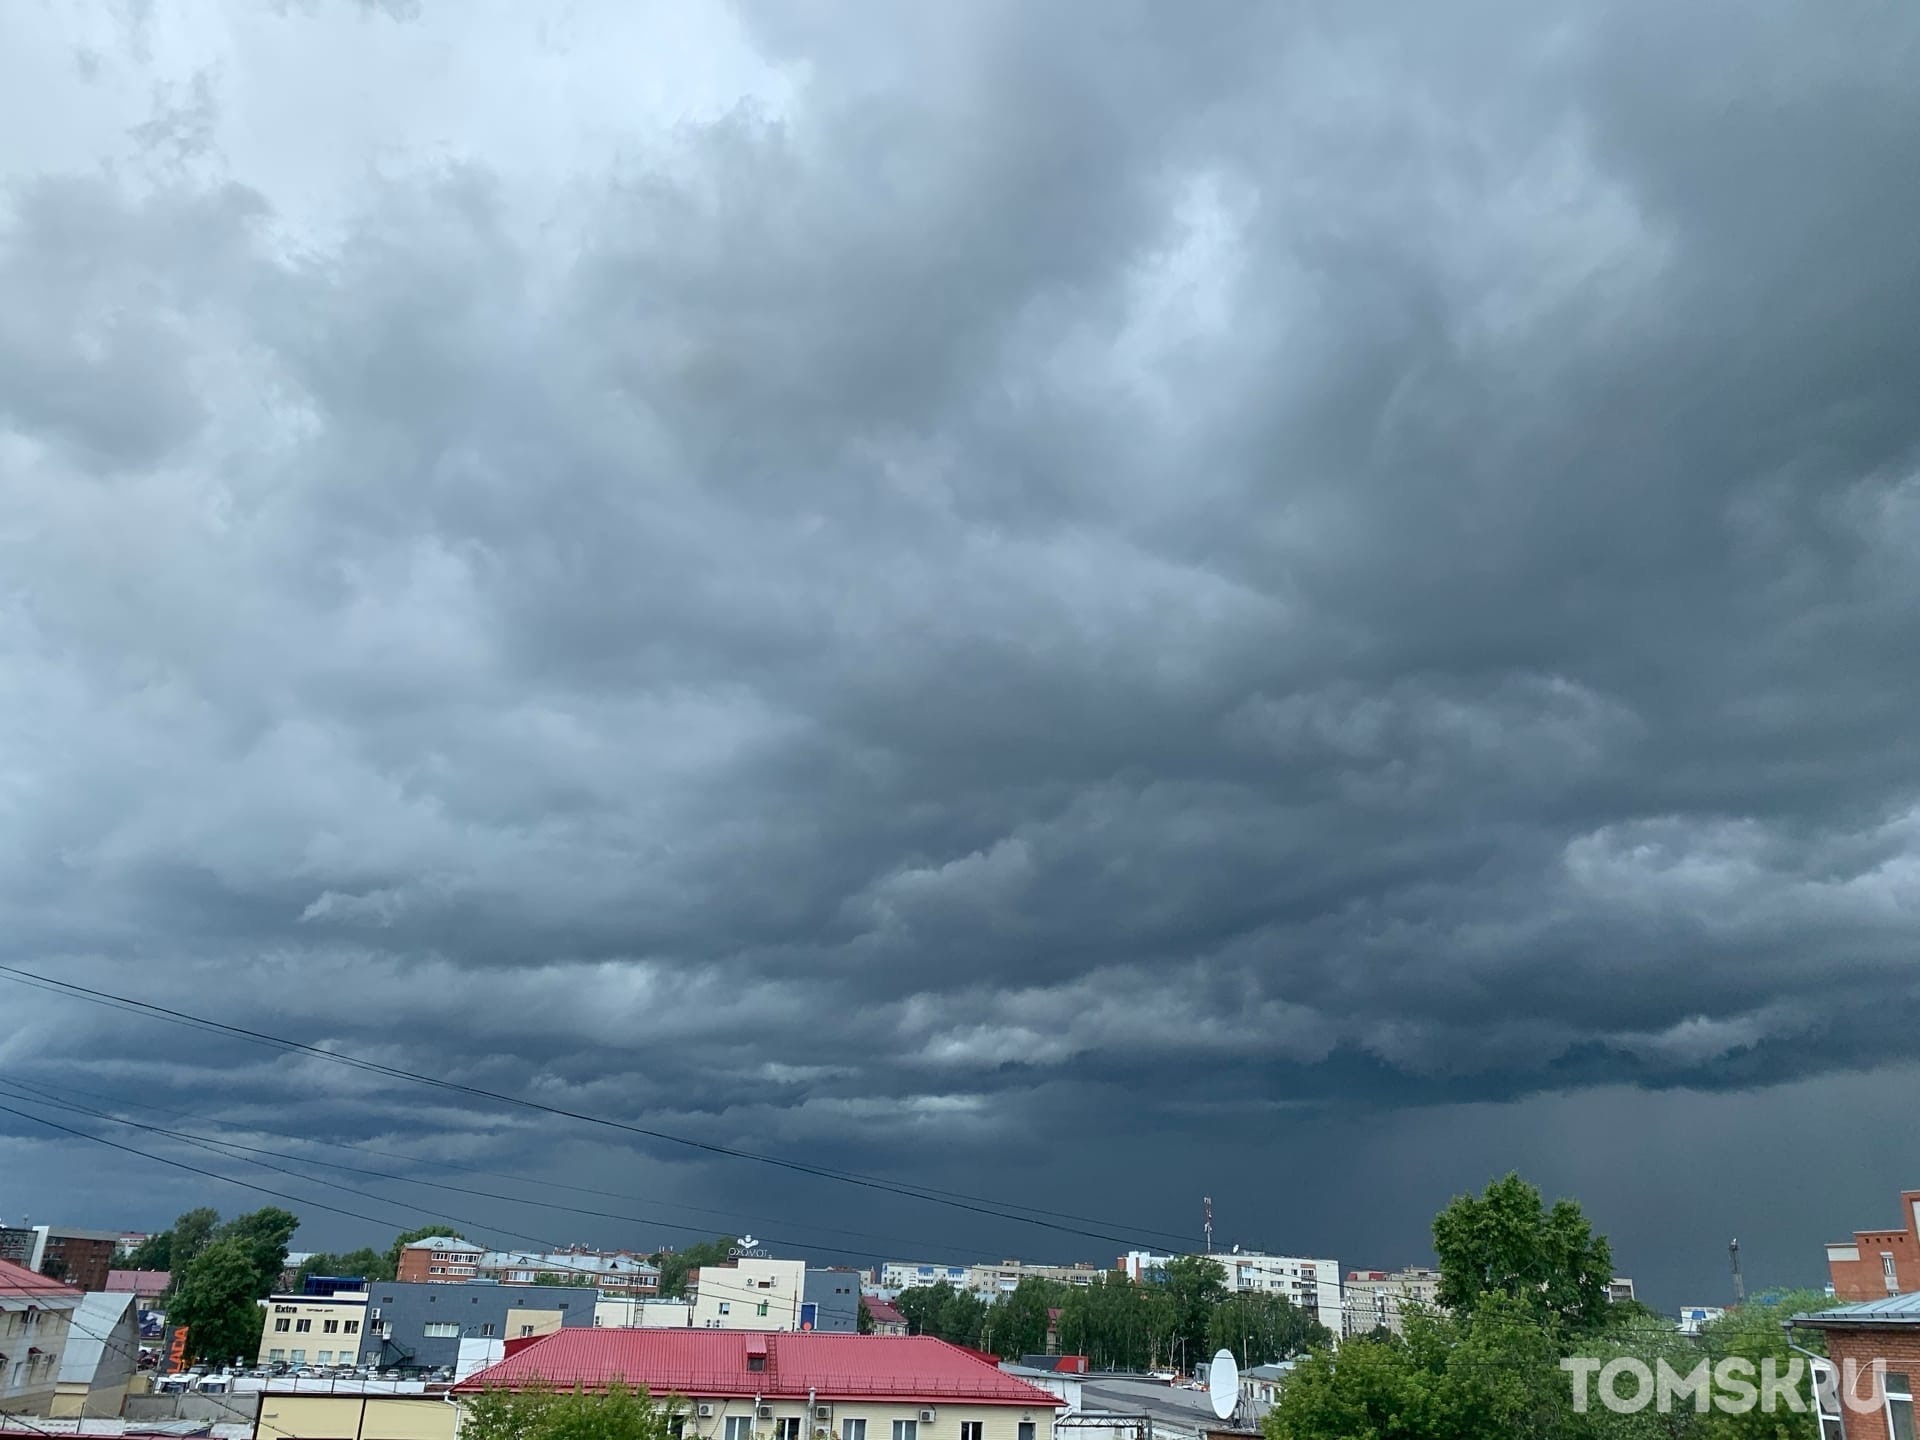 Штормовое предупреждение объявлено на воскресенье в Томской области